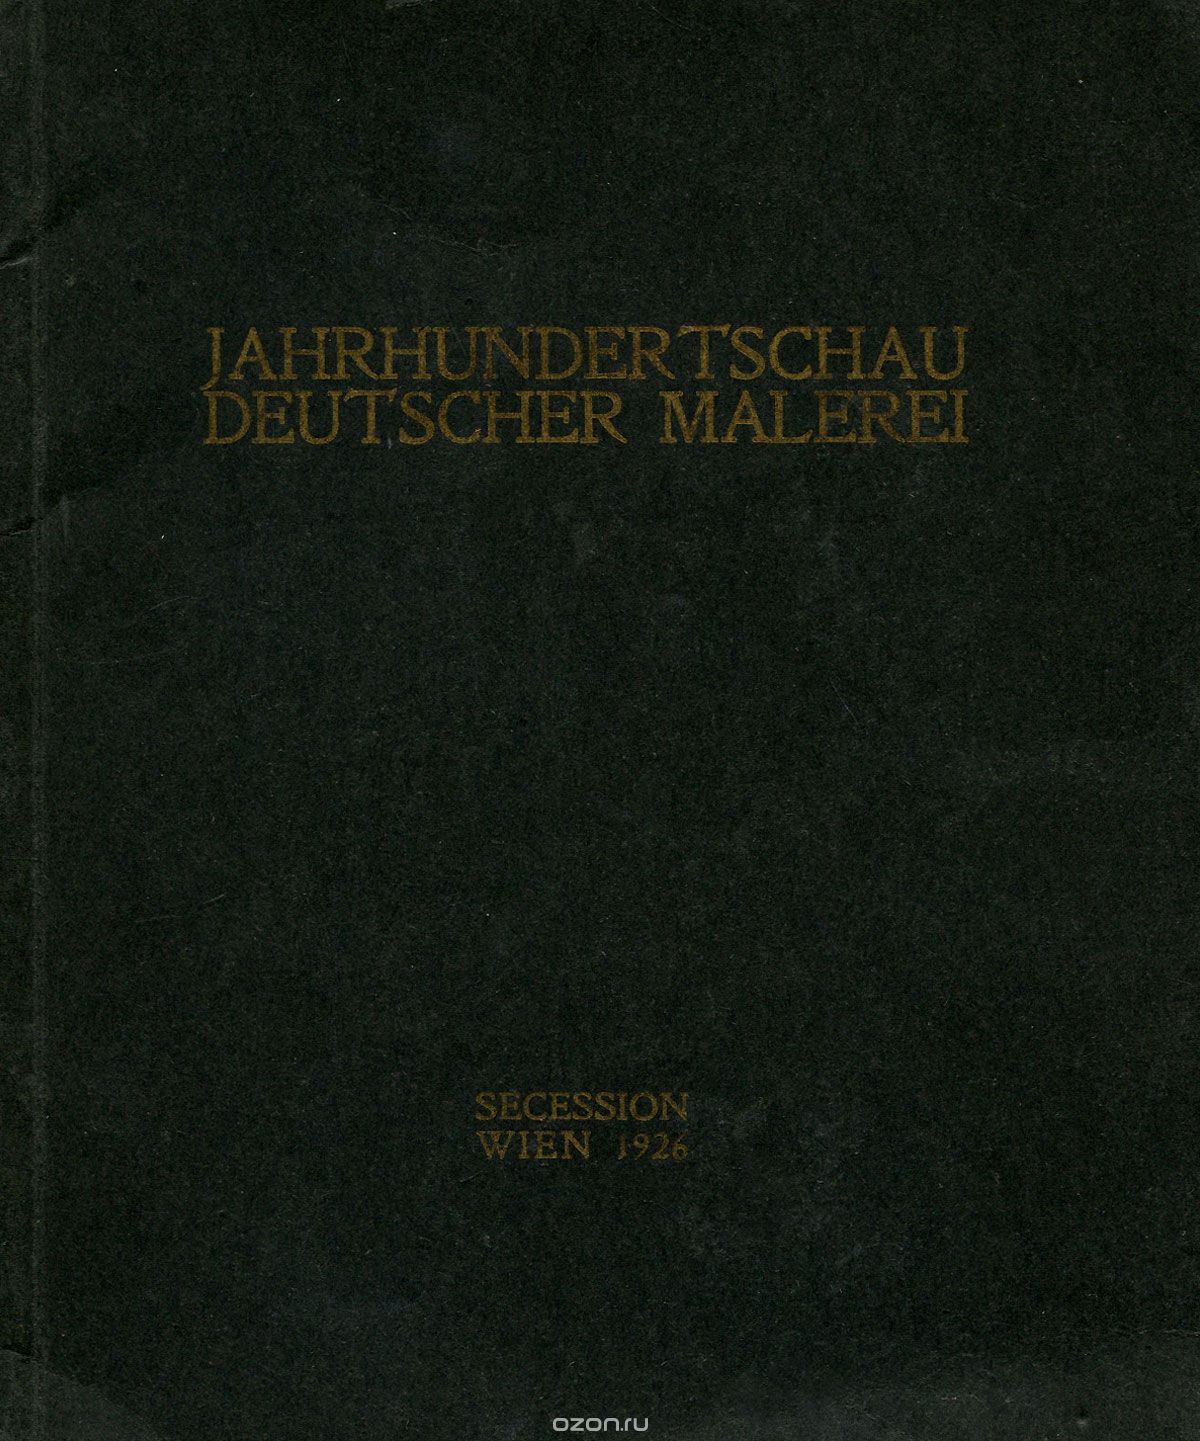 Скачать книгу "Jahrhundertschau deutscher malerei"